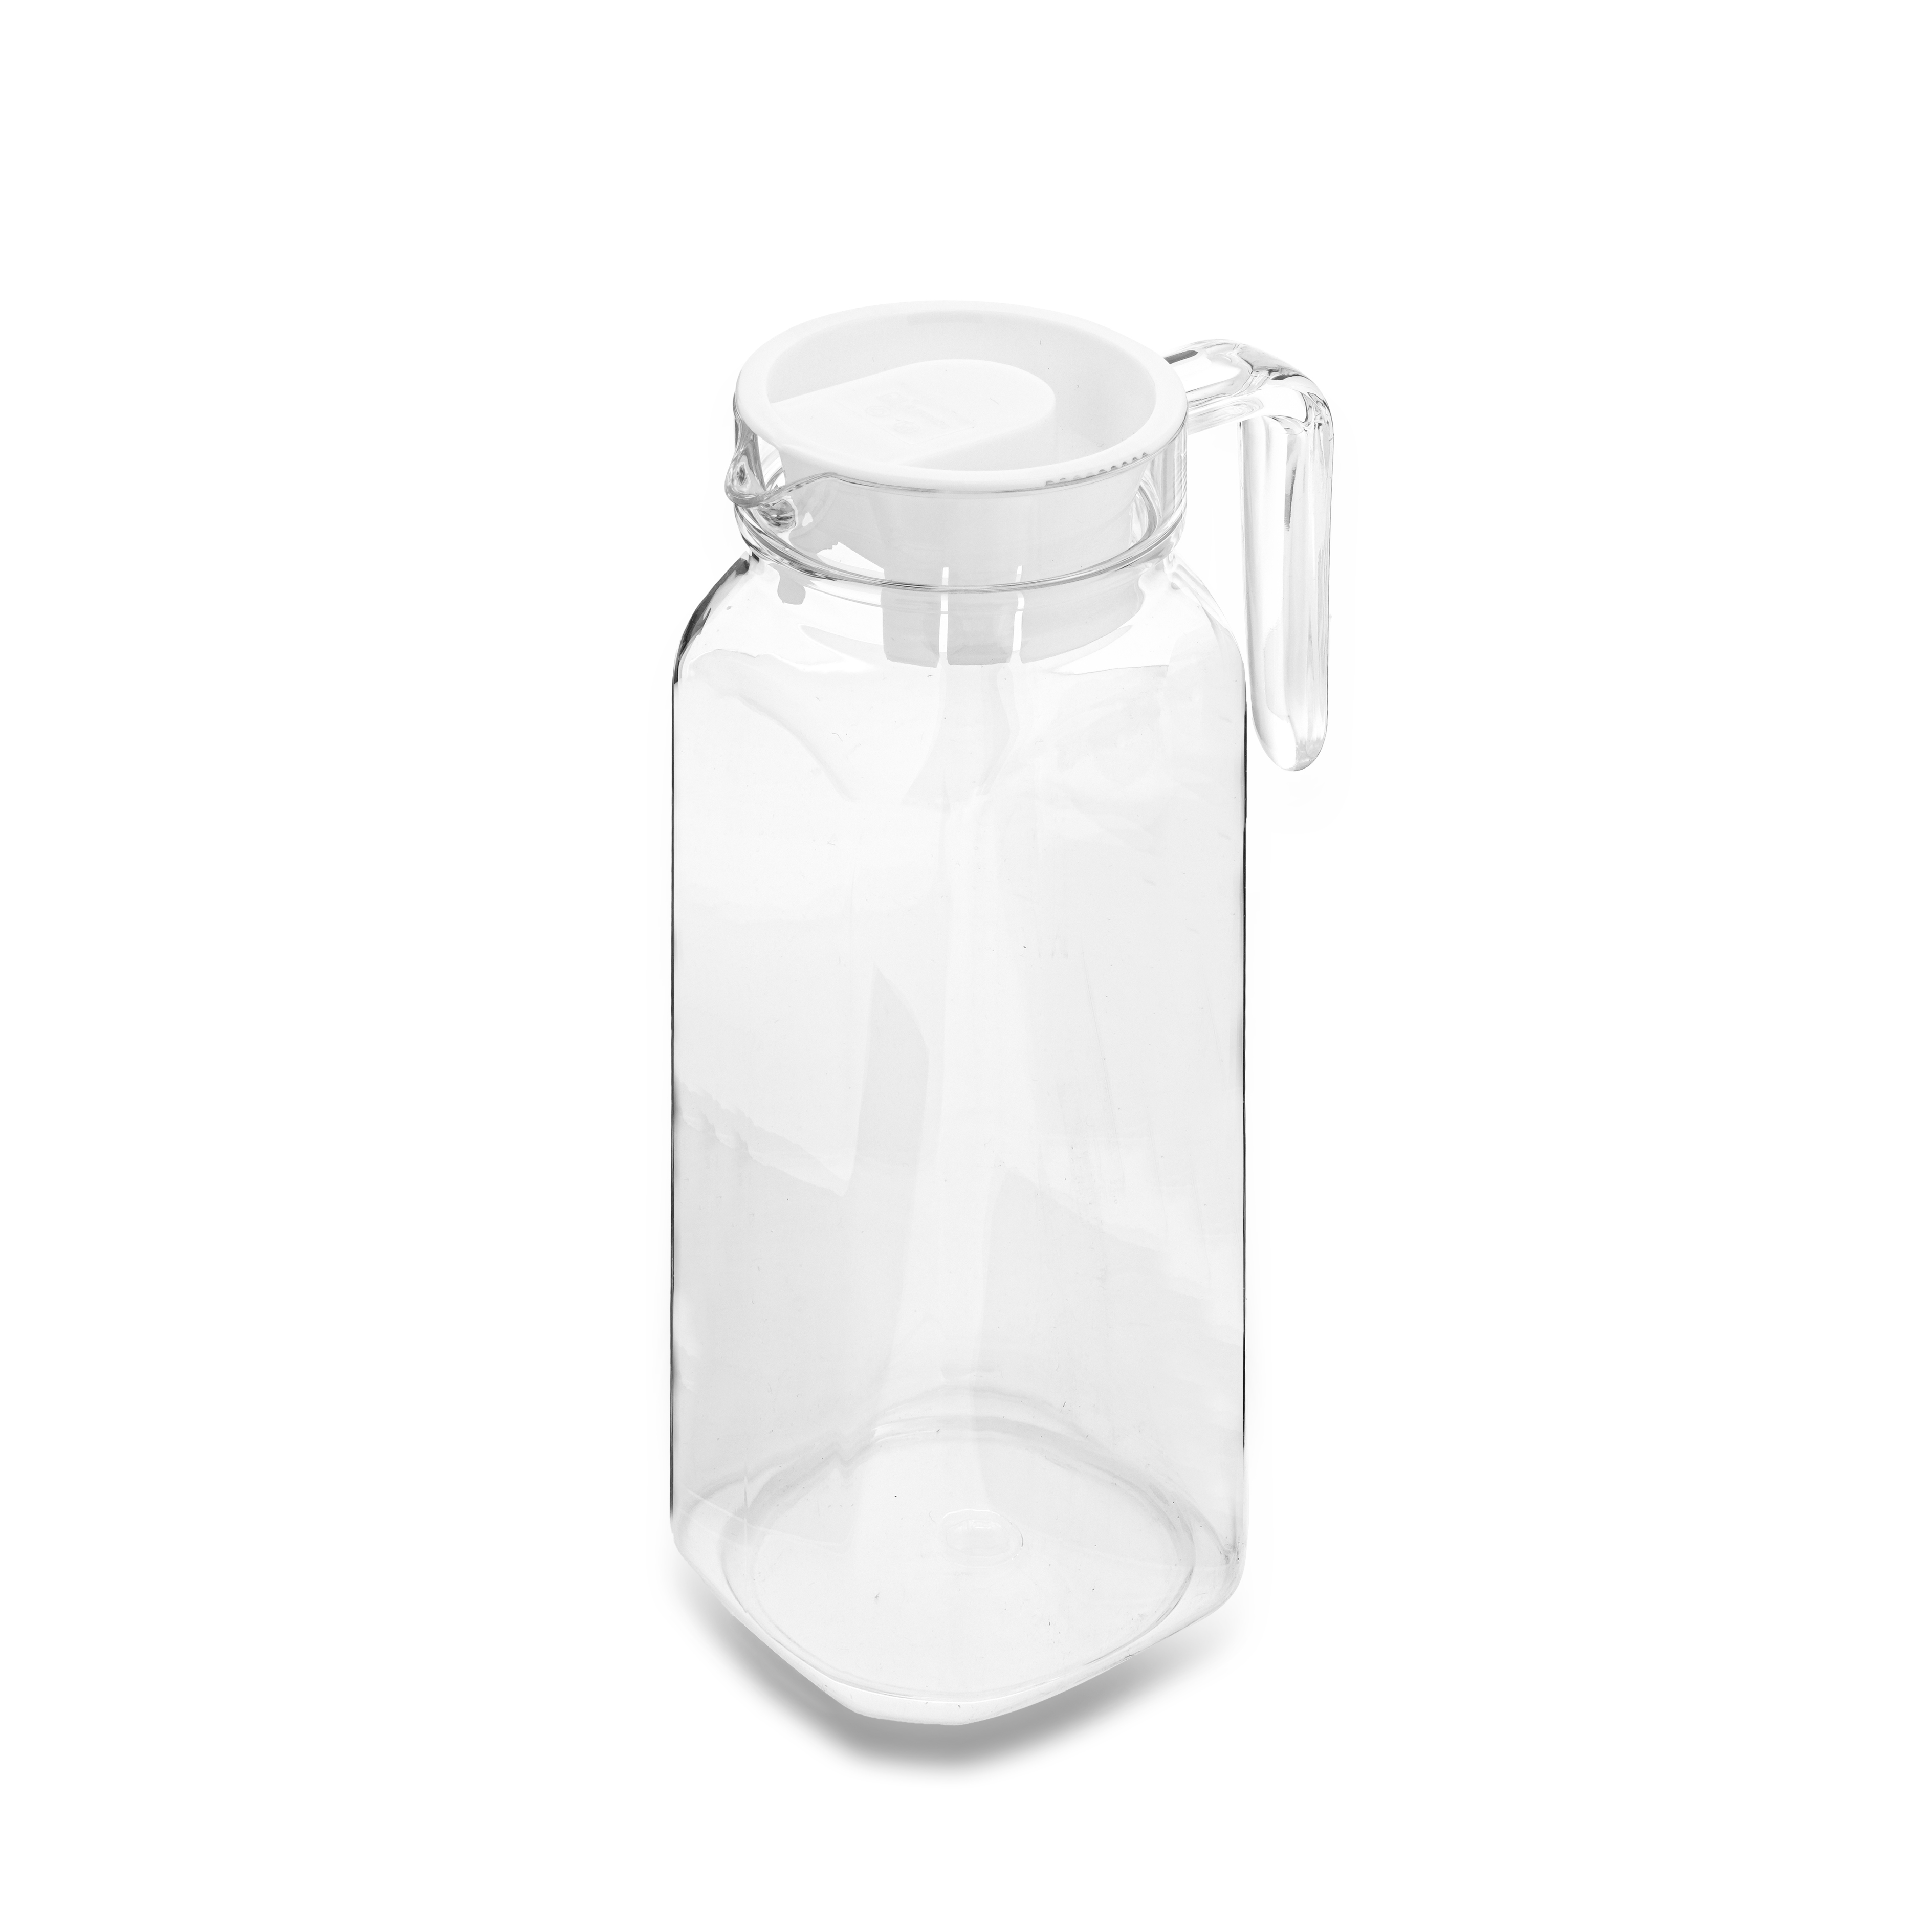 Bình nước nhựa màu trắng trong giống thủy tinh 1.2L